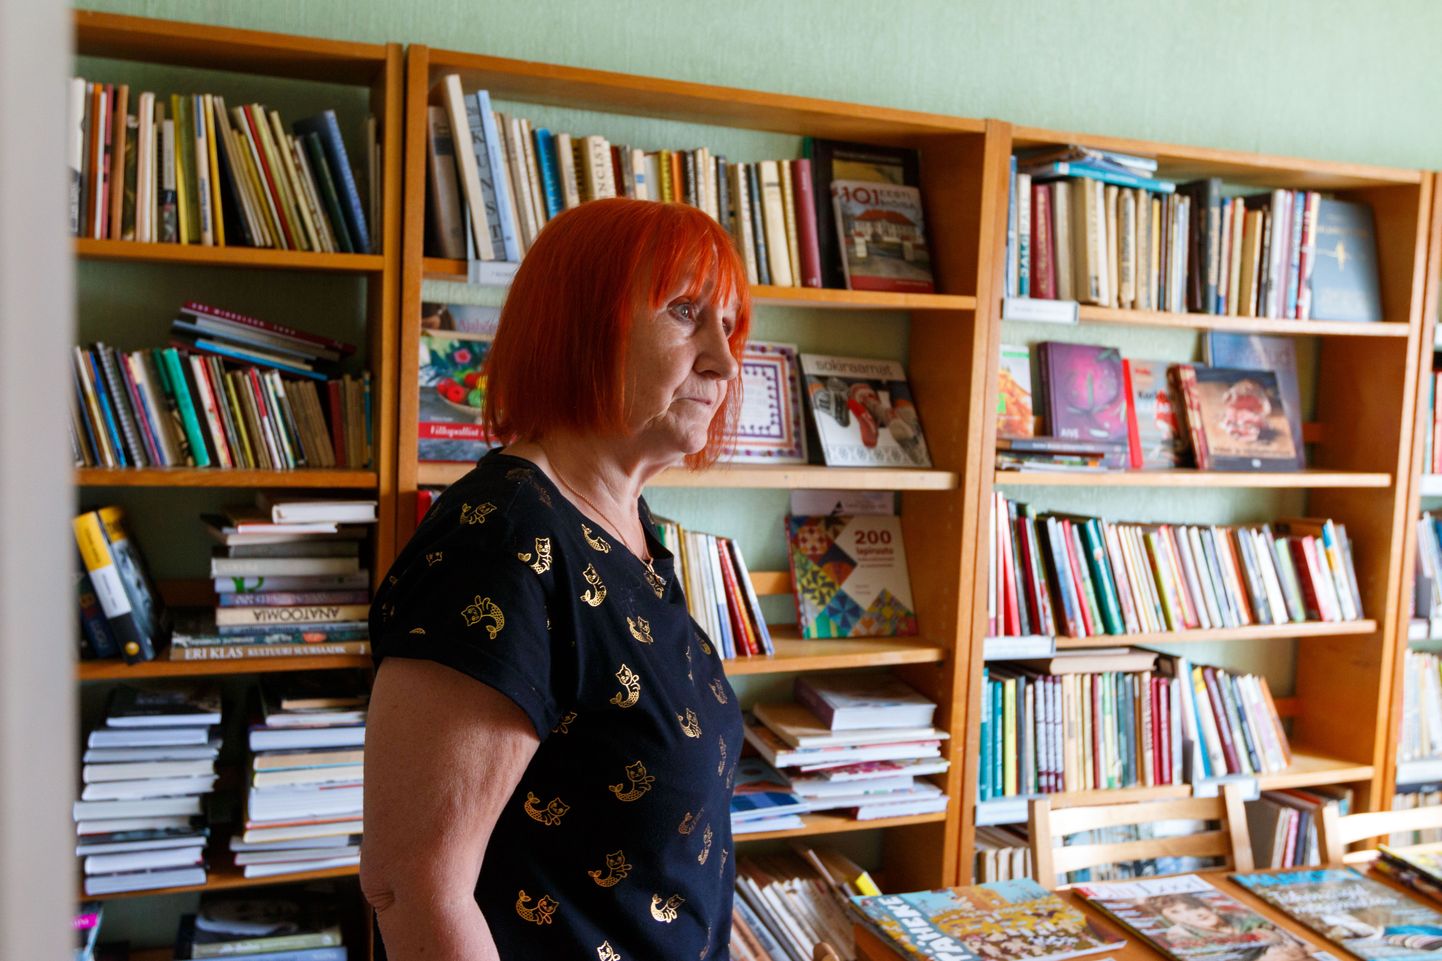 Kaja Vanags, kellele meeldib väga raamatuid lugeda, on leidnud endale südamelähedase töö kohalikus raamatukogus.